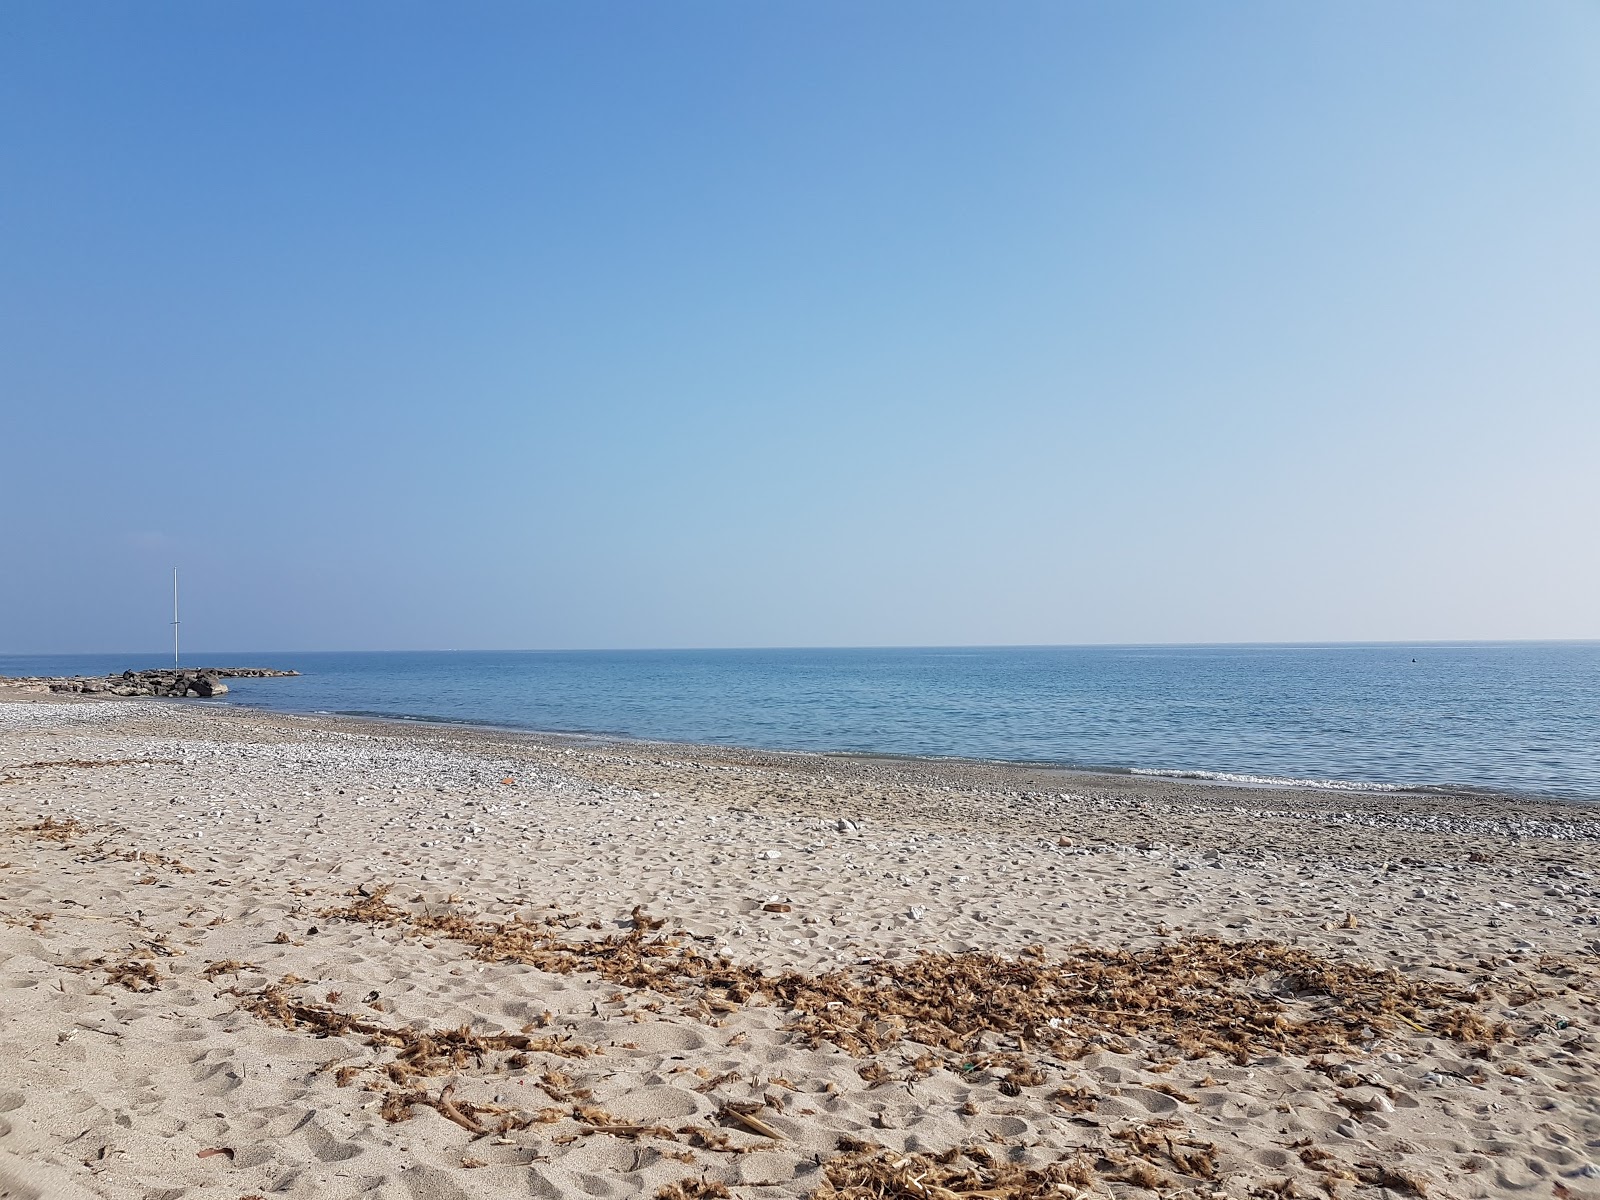 Fotografie cu San Sebastiano beach - locul popular printre cunoscătorii de relaxare